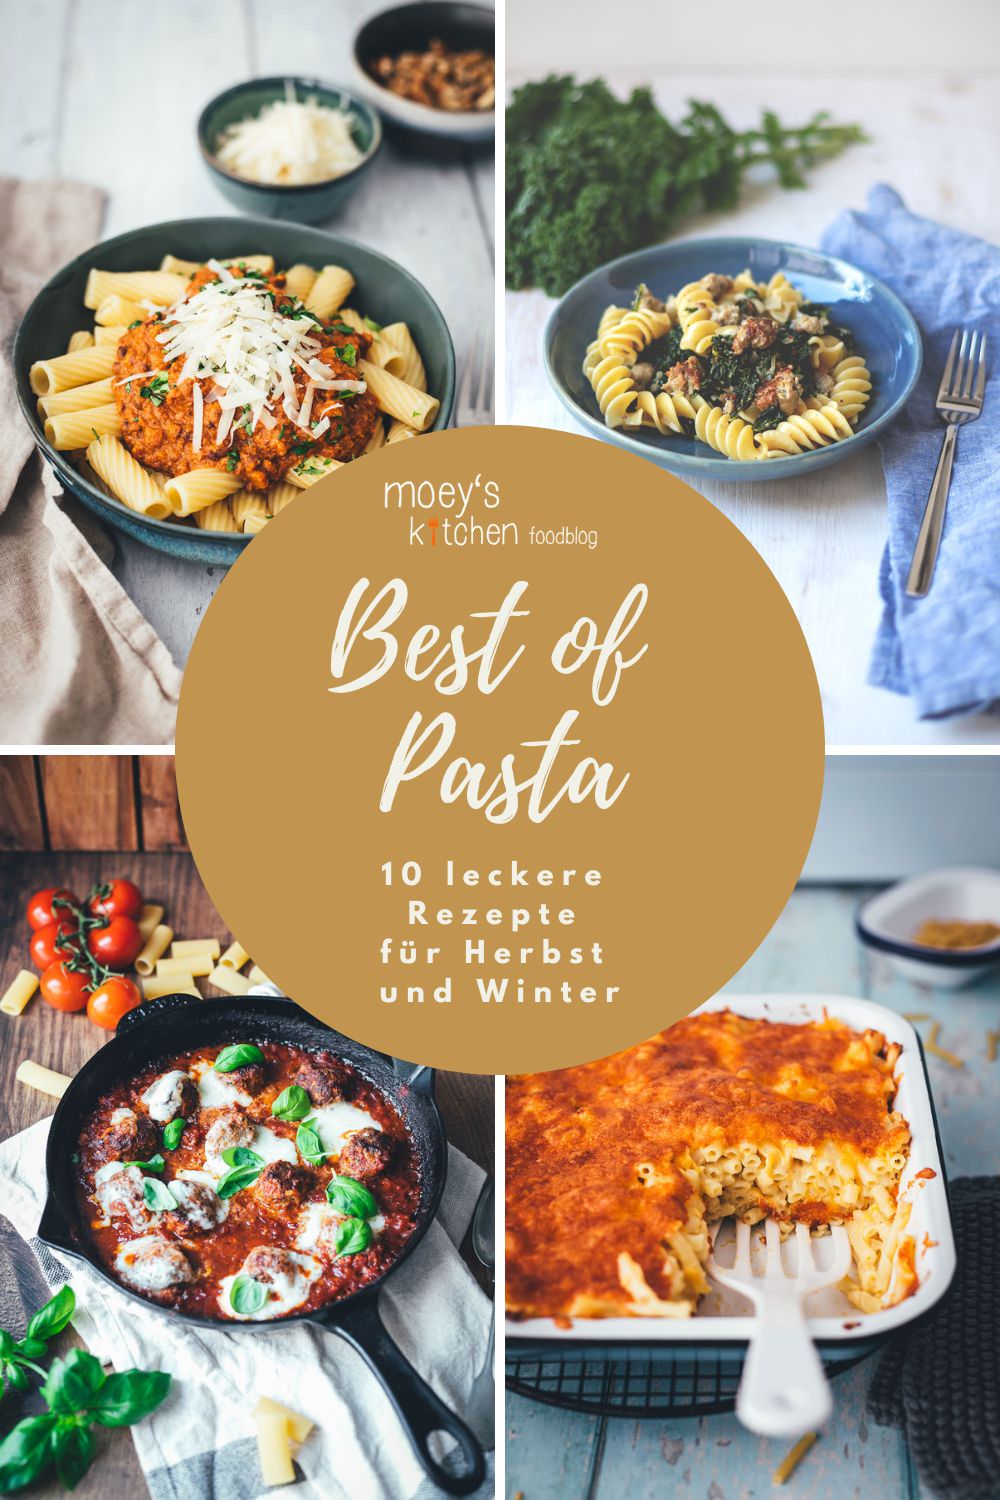 Best of Pasta von www.moeyskitchen.com